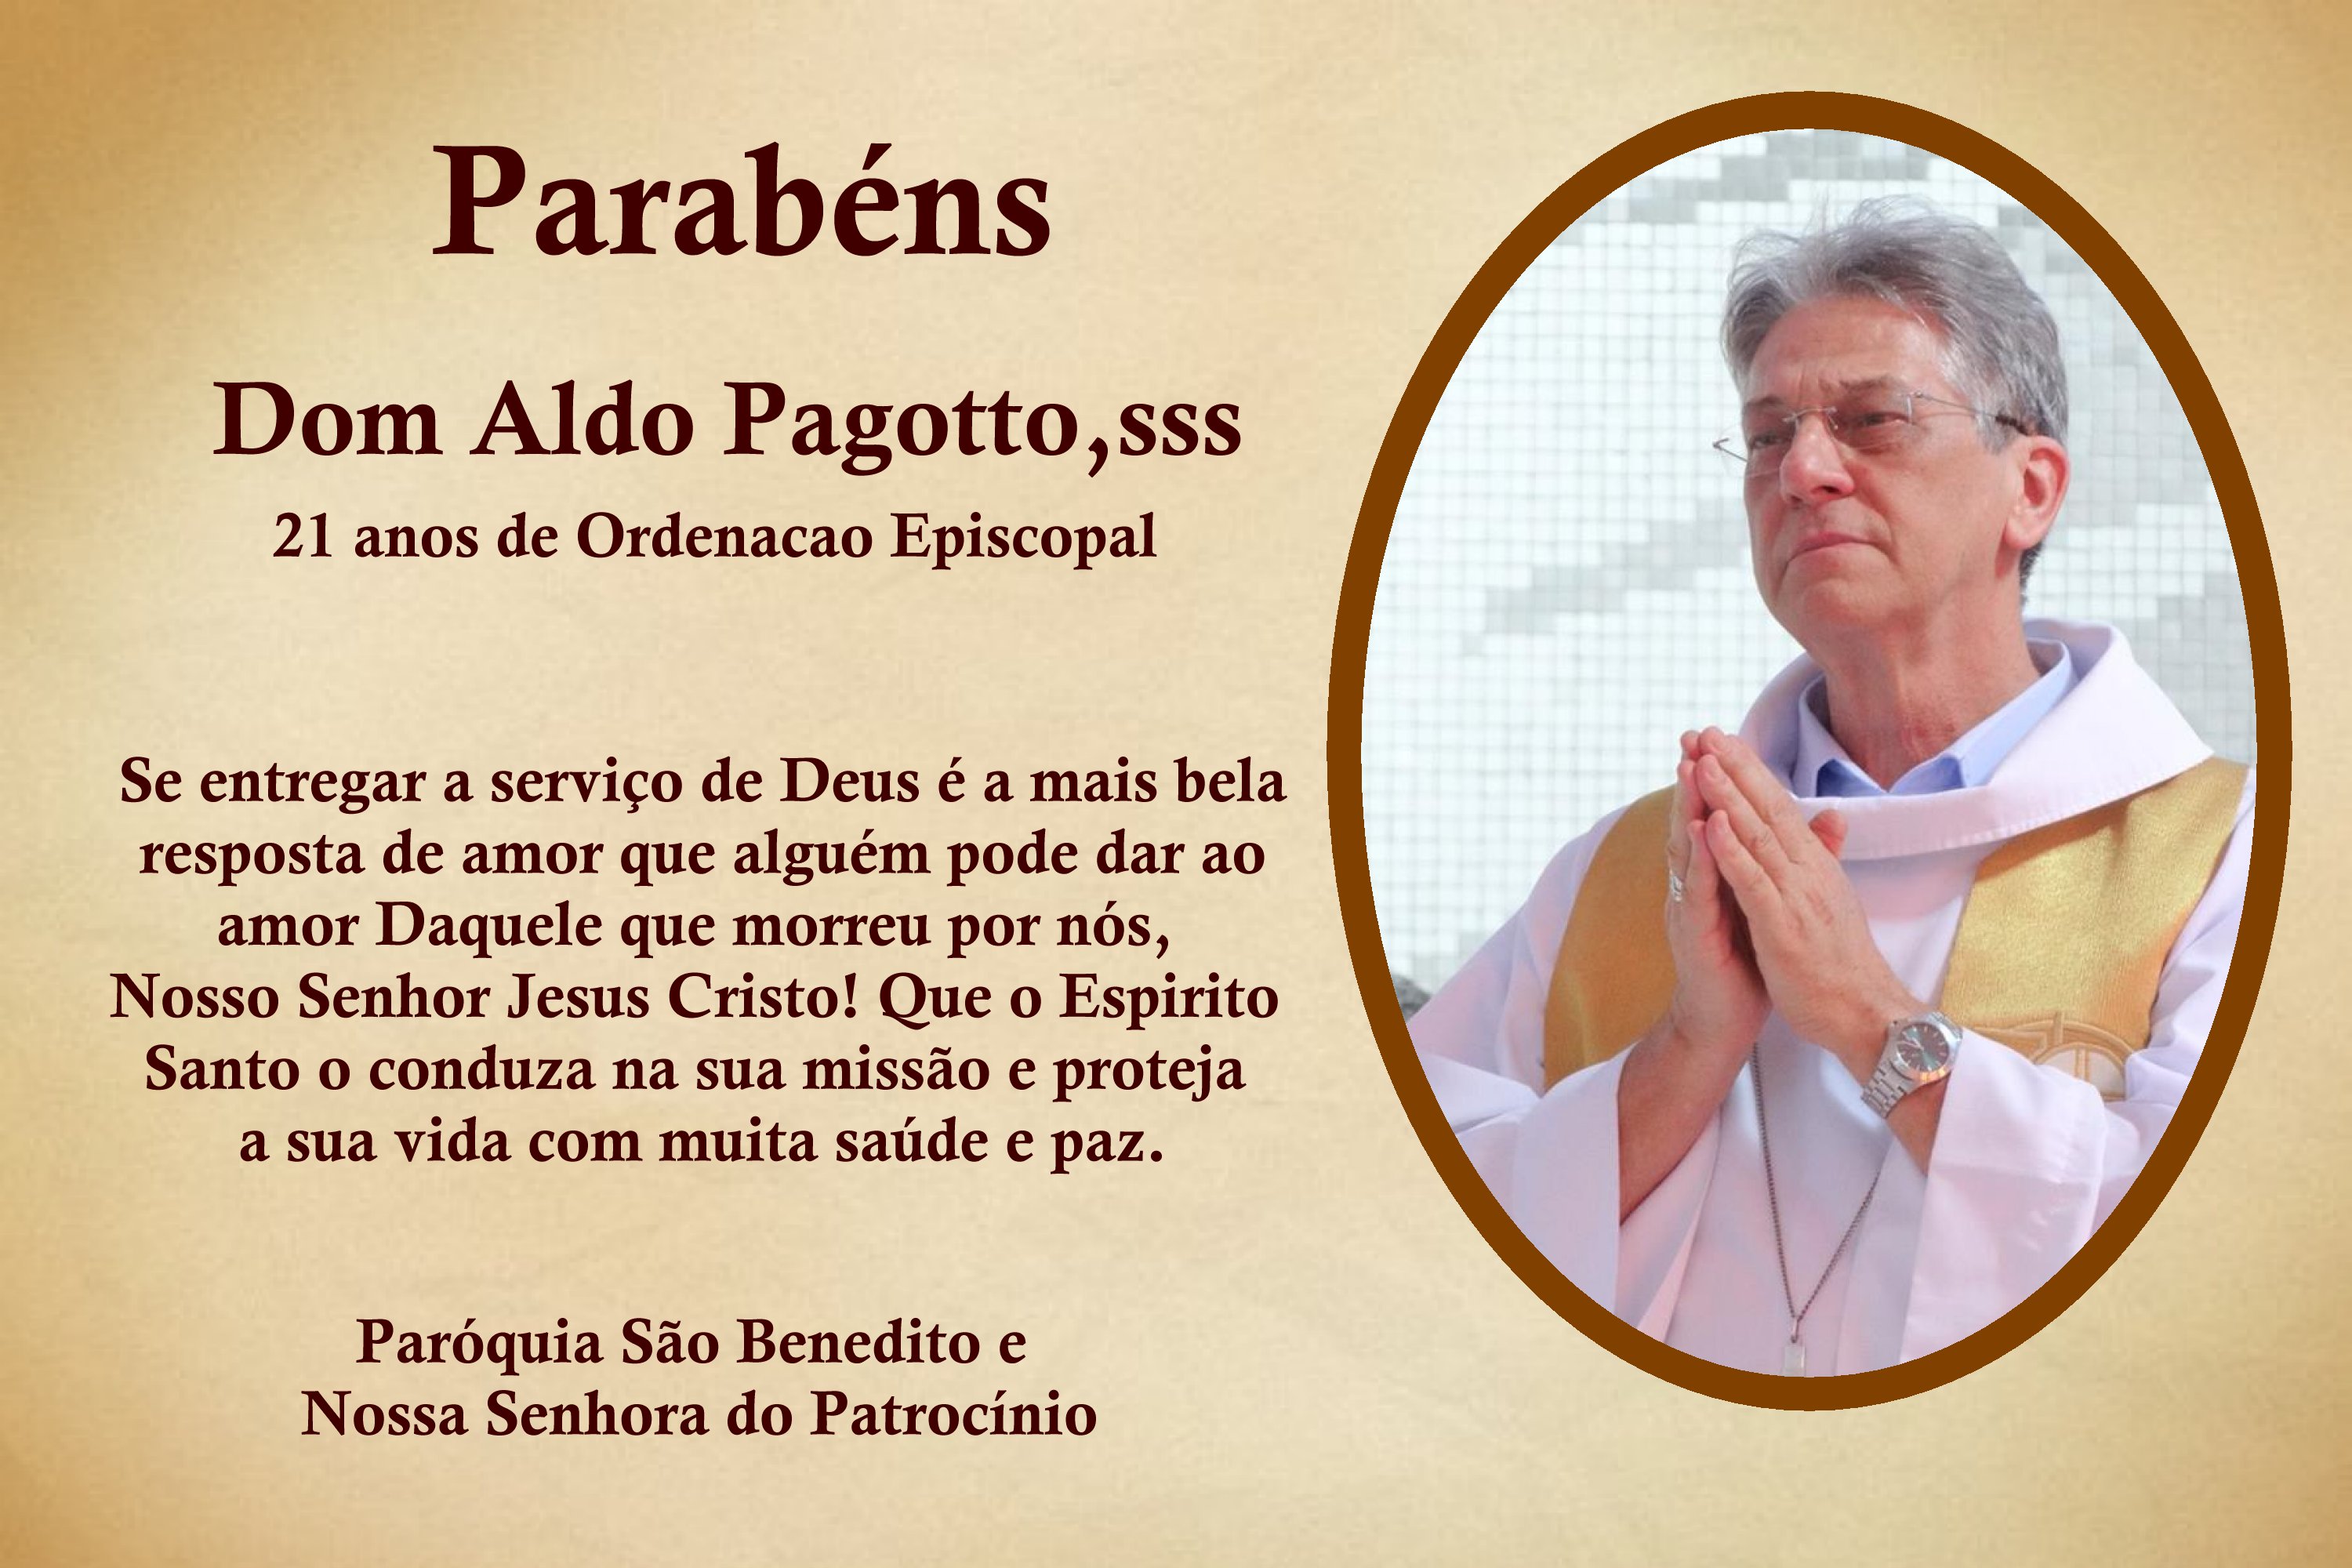 Dom Aldo Pagotto,sss celebra 21 anos de Ordenação Episcopal.